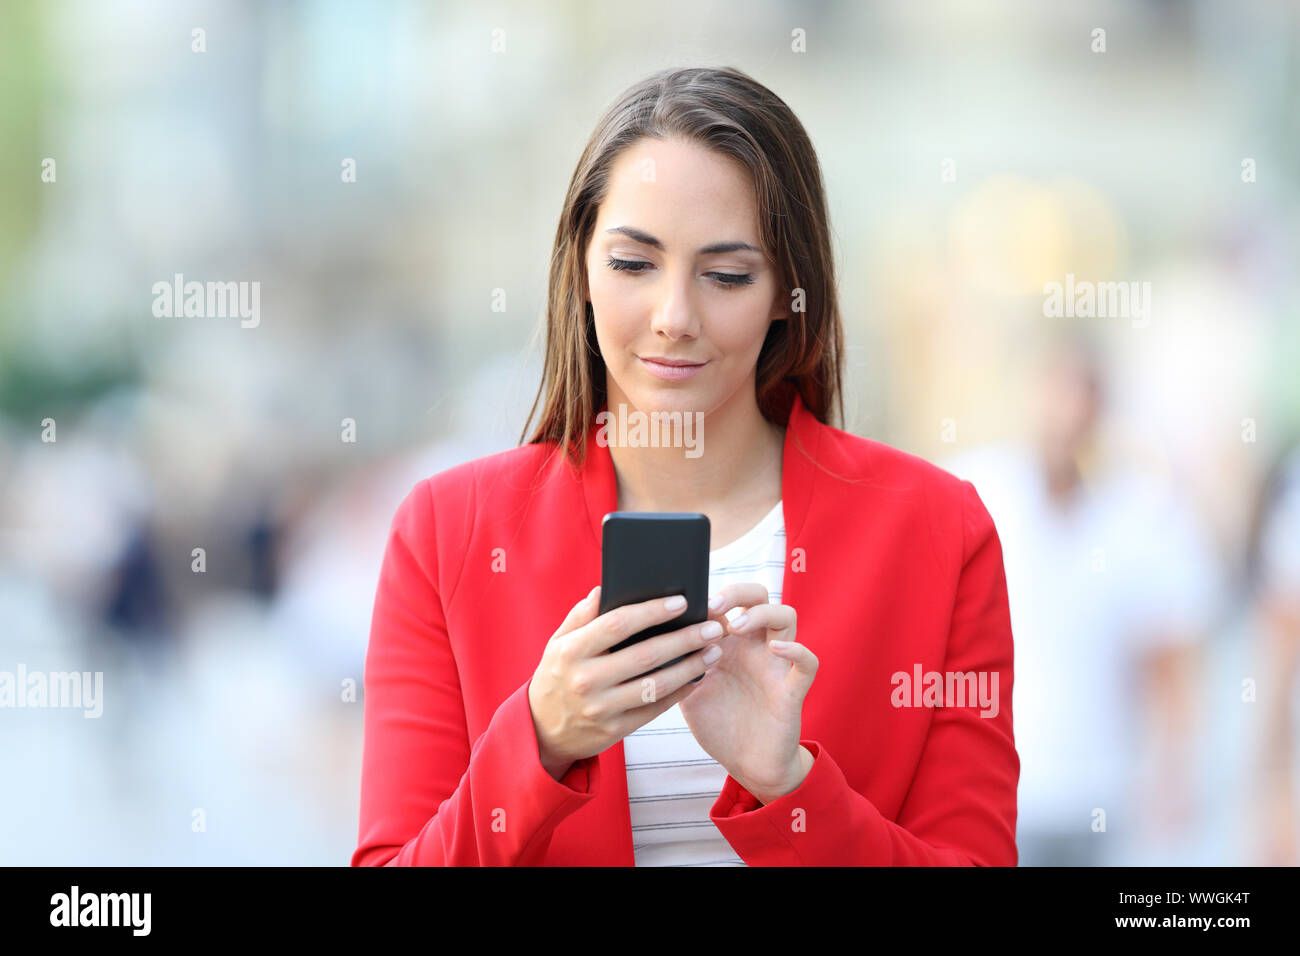 Vue avant du serious woman en rouge à l'aide de smart phone marche dans la rue Banque D'Images